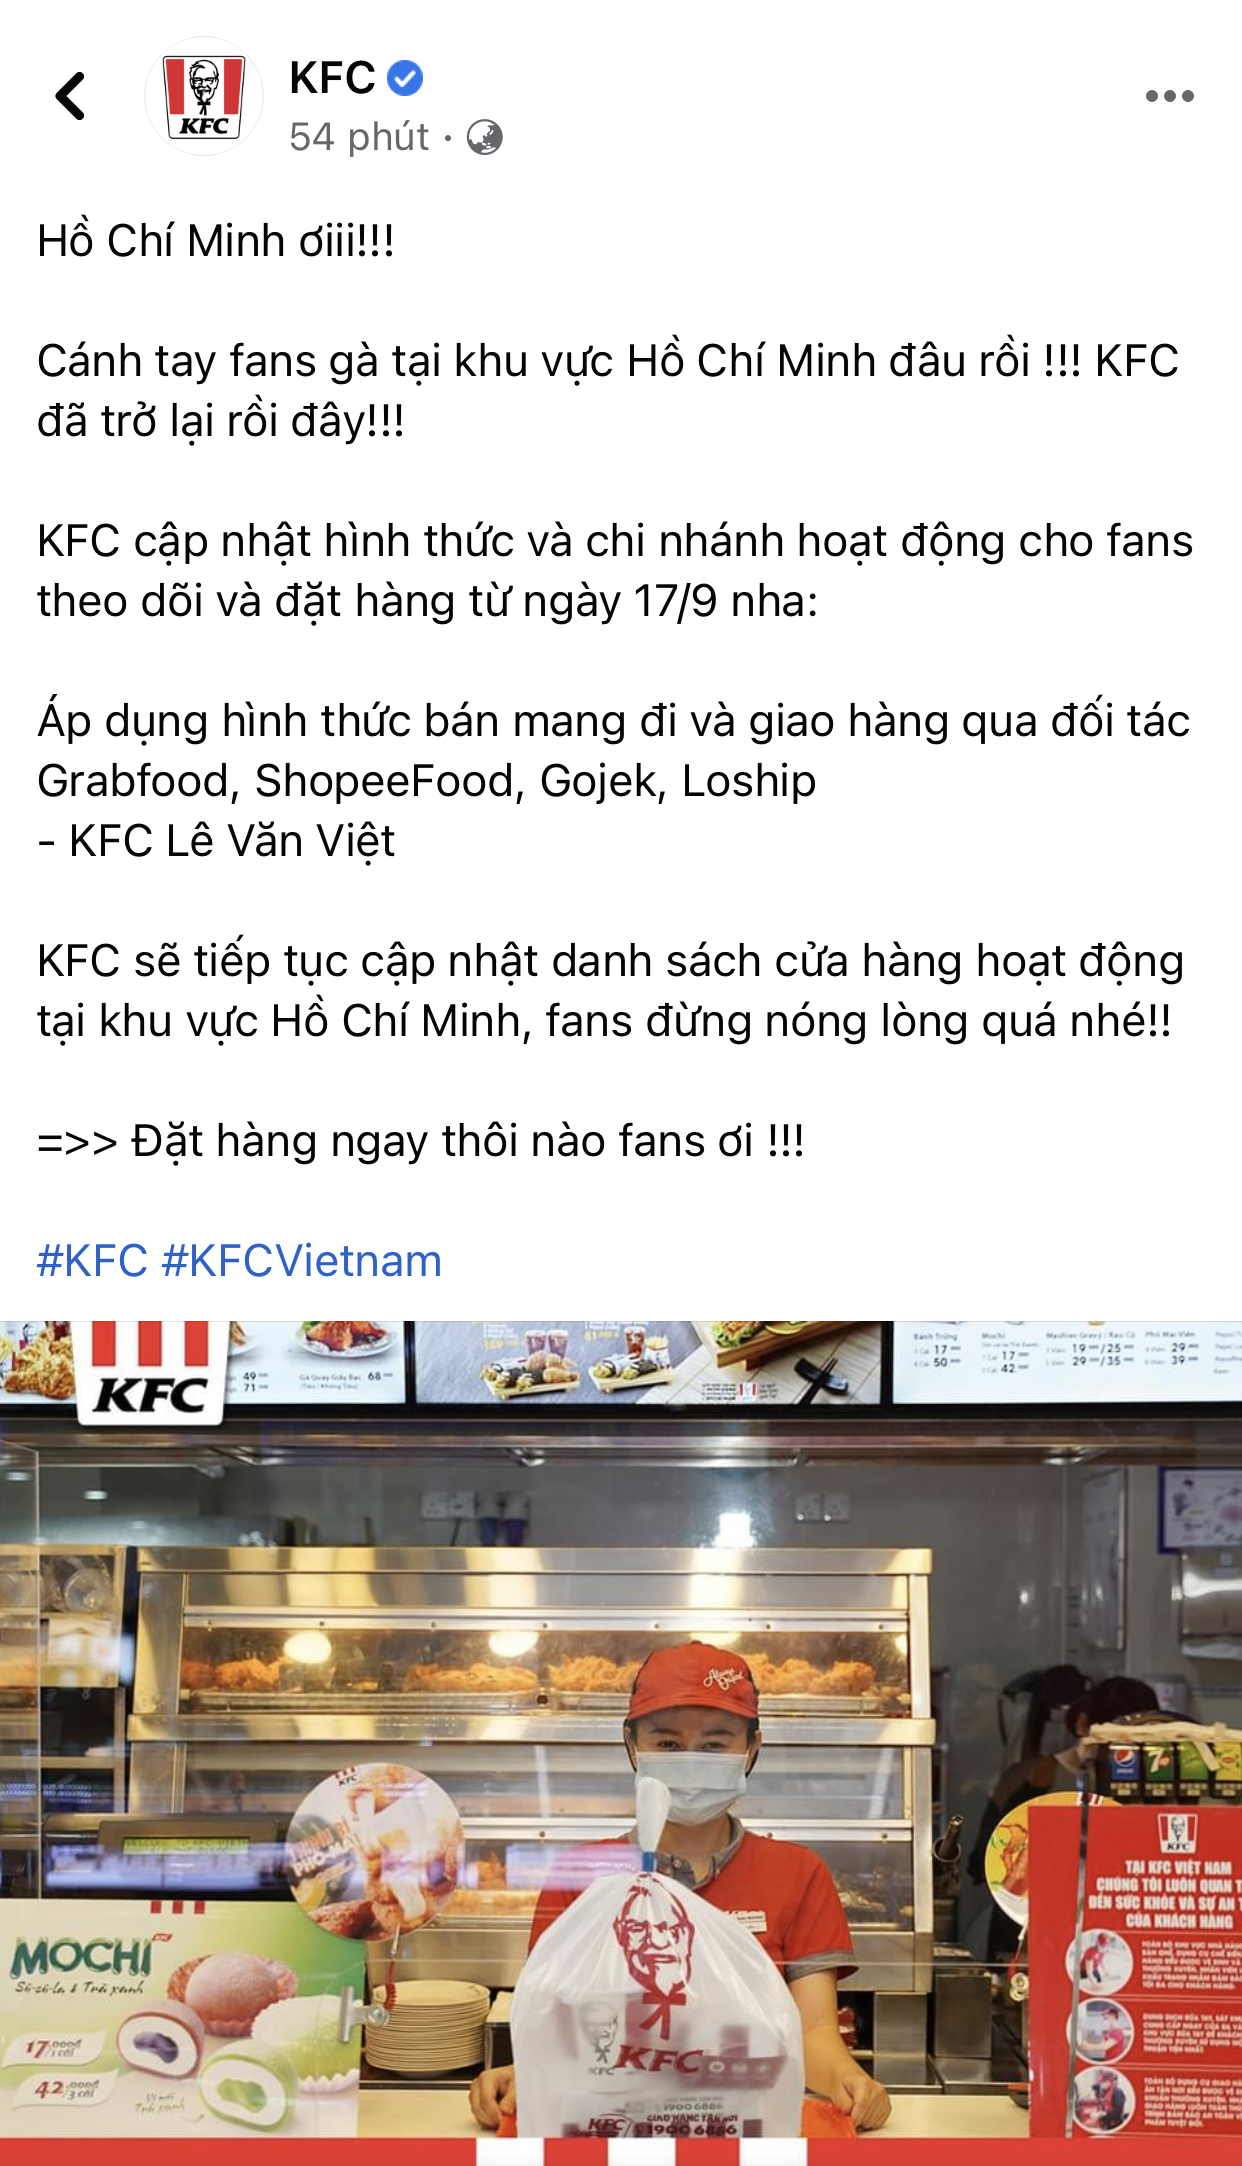 HOT: 10 hãng thức ăn nhanh đình đám nhất Việt Nam thông báo thời gian mở cửa trở lại, Sài Gòn có 2 nơi duy nhất comeback - Ảnh 6.